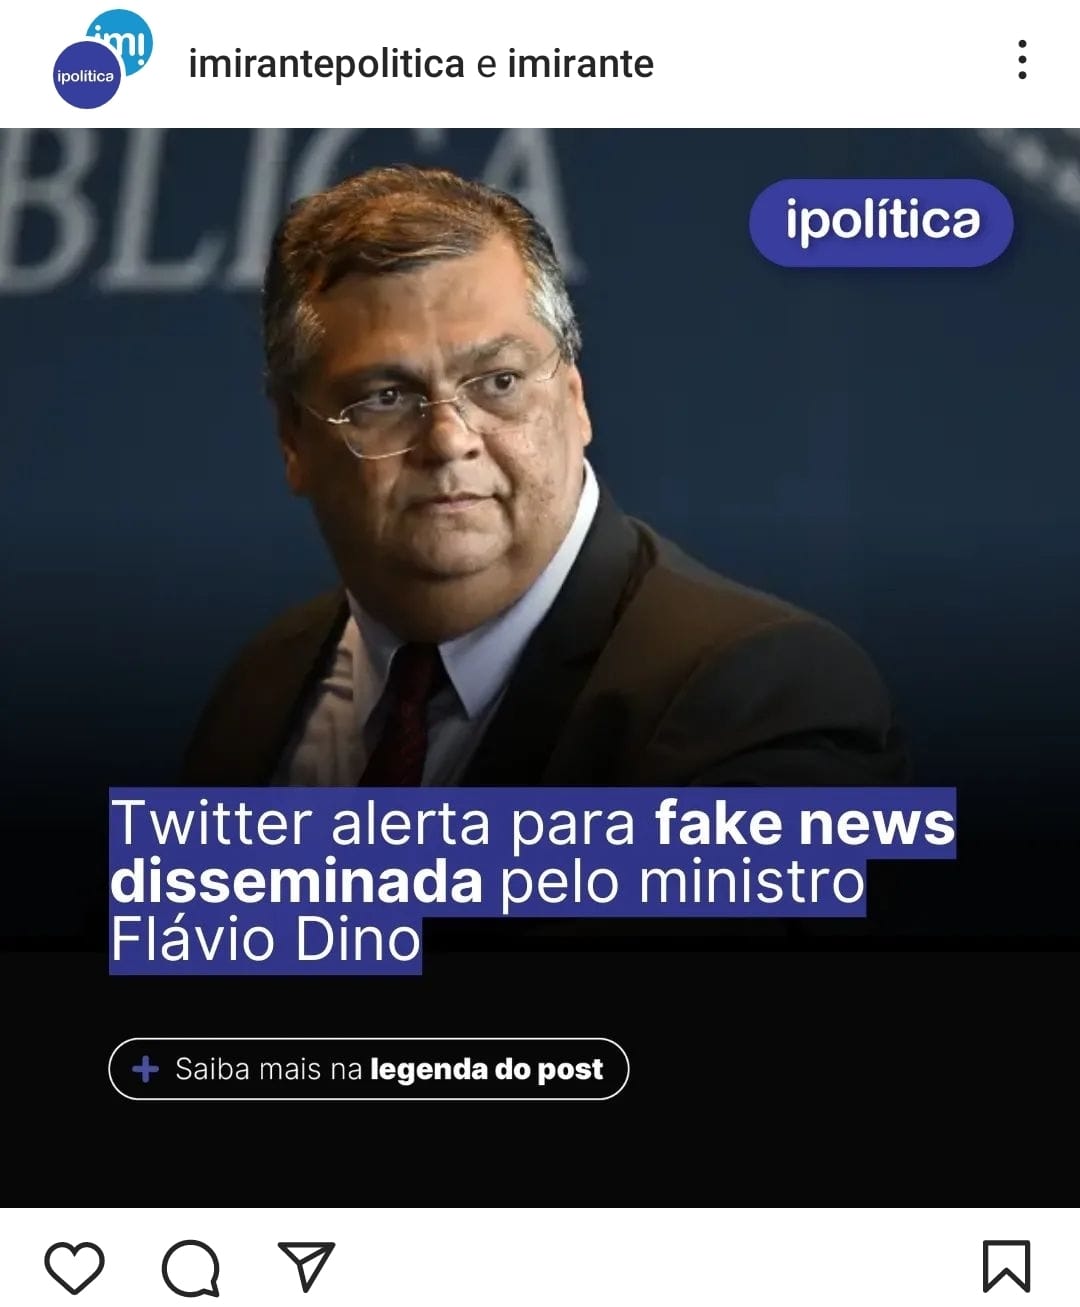 FAKE NEWS – Twitter alerta que factóide disseminado por Dino onde afirma que governador de Minas Gerais, Romeu Zema fomentou divisão regional; a nota de rede social aponta tese como falsa…